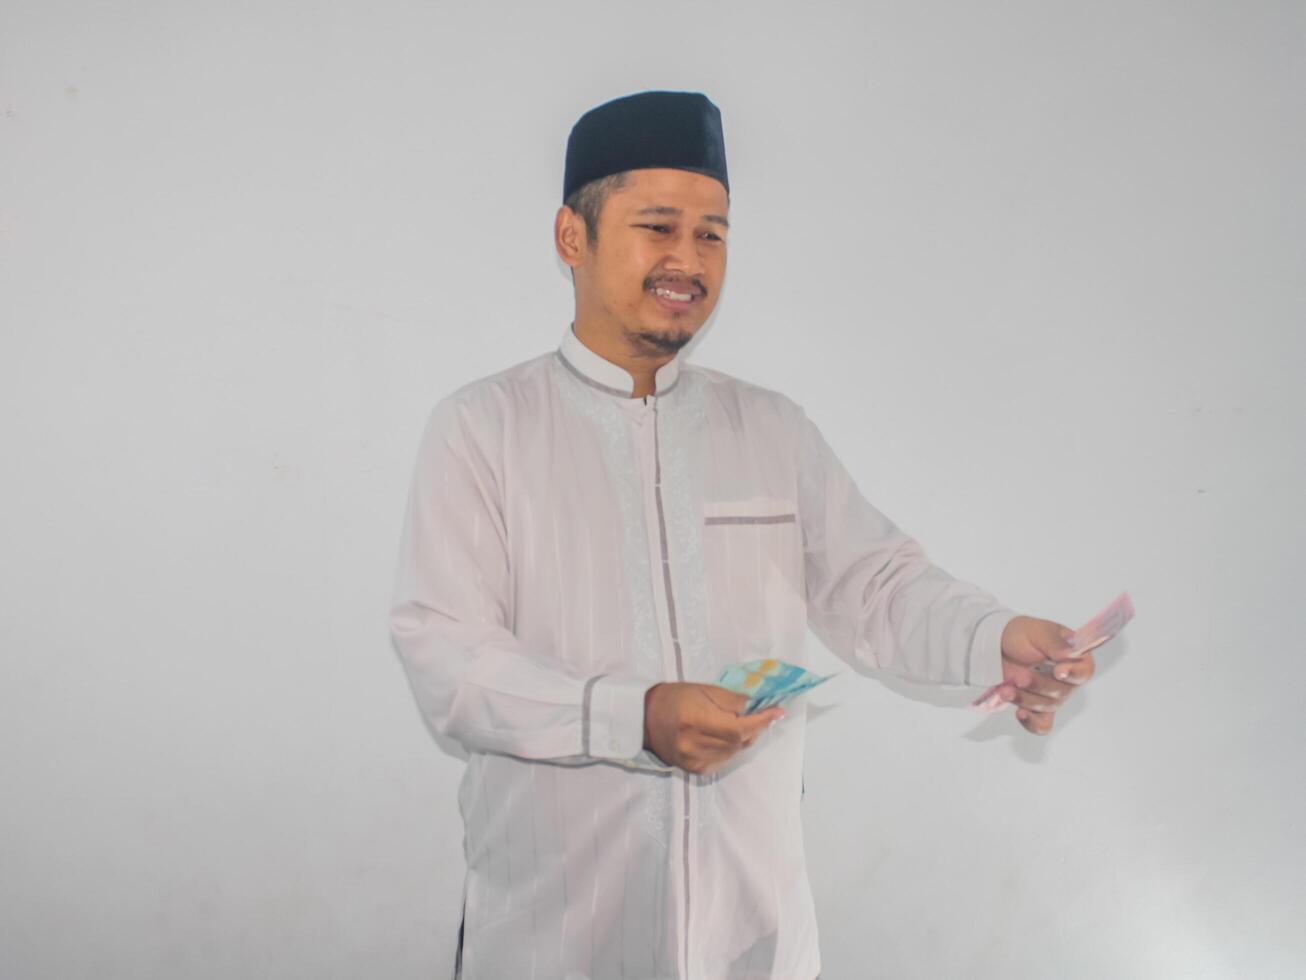 asiatique musulman homme faire un don le sien argent photo